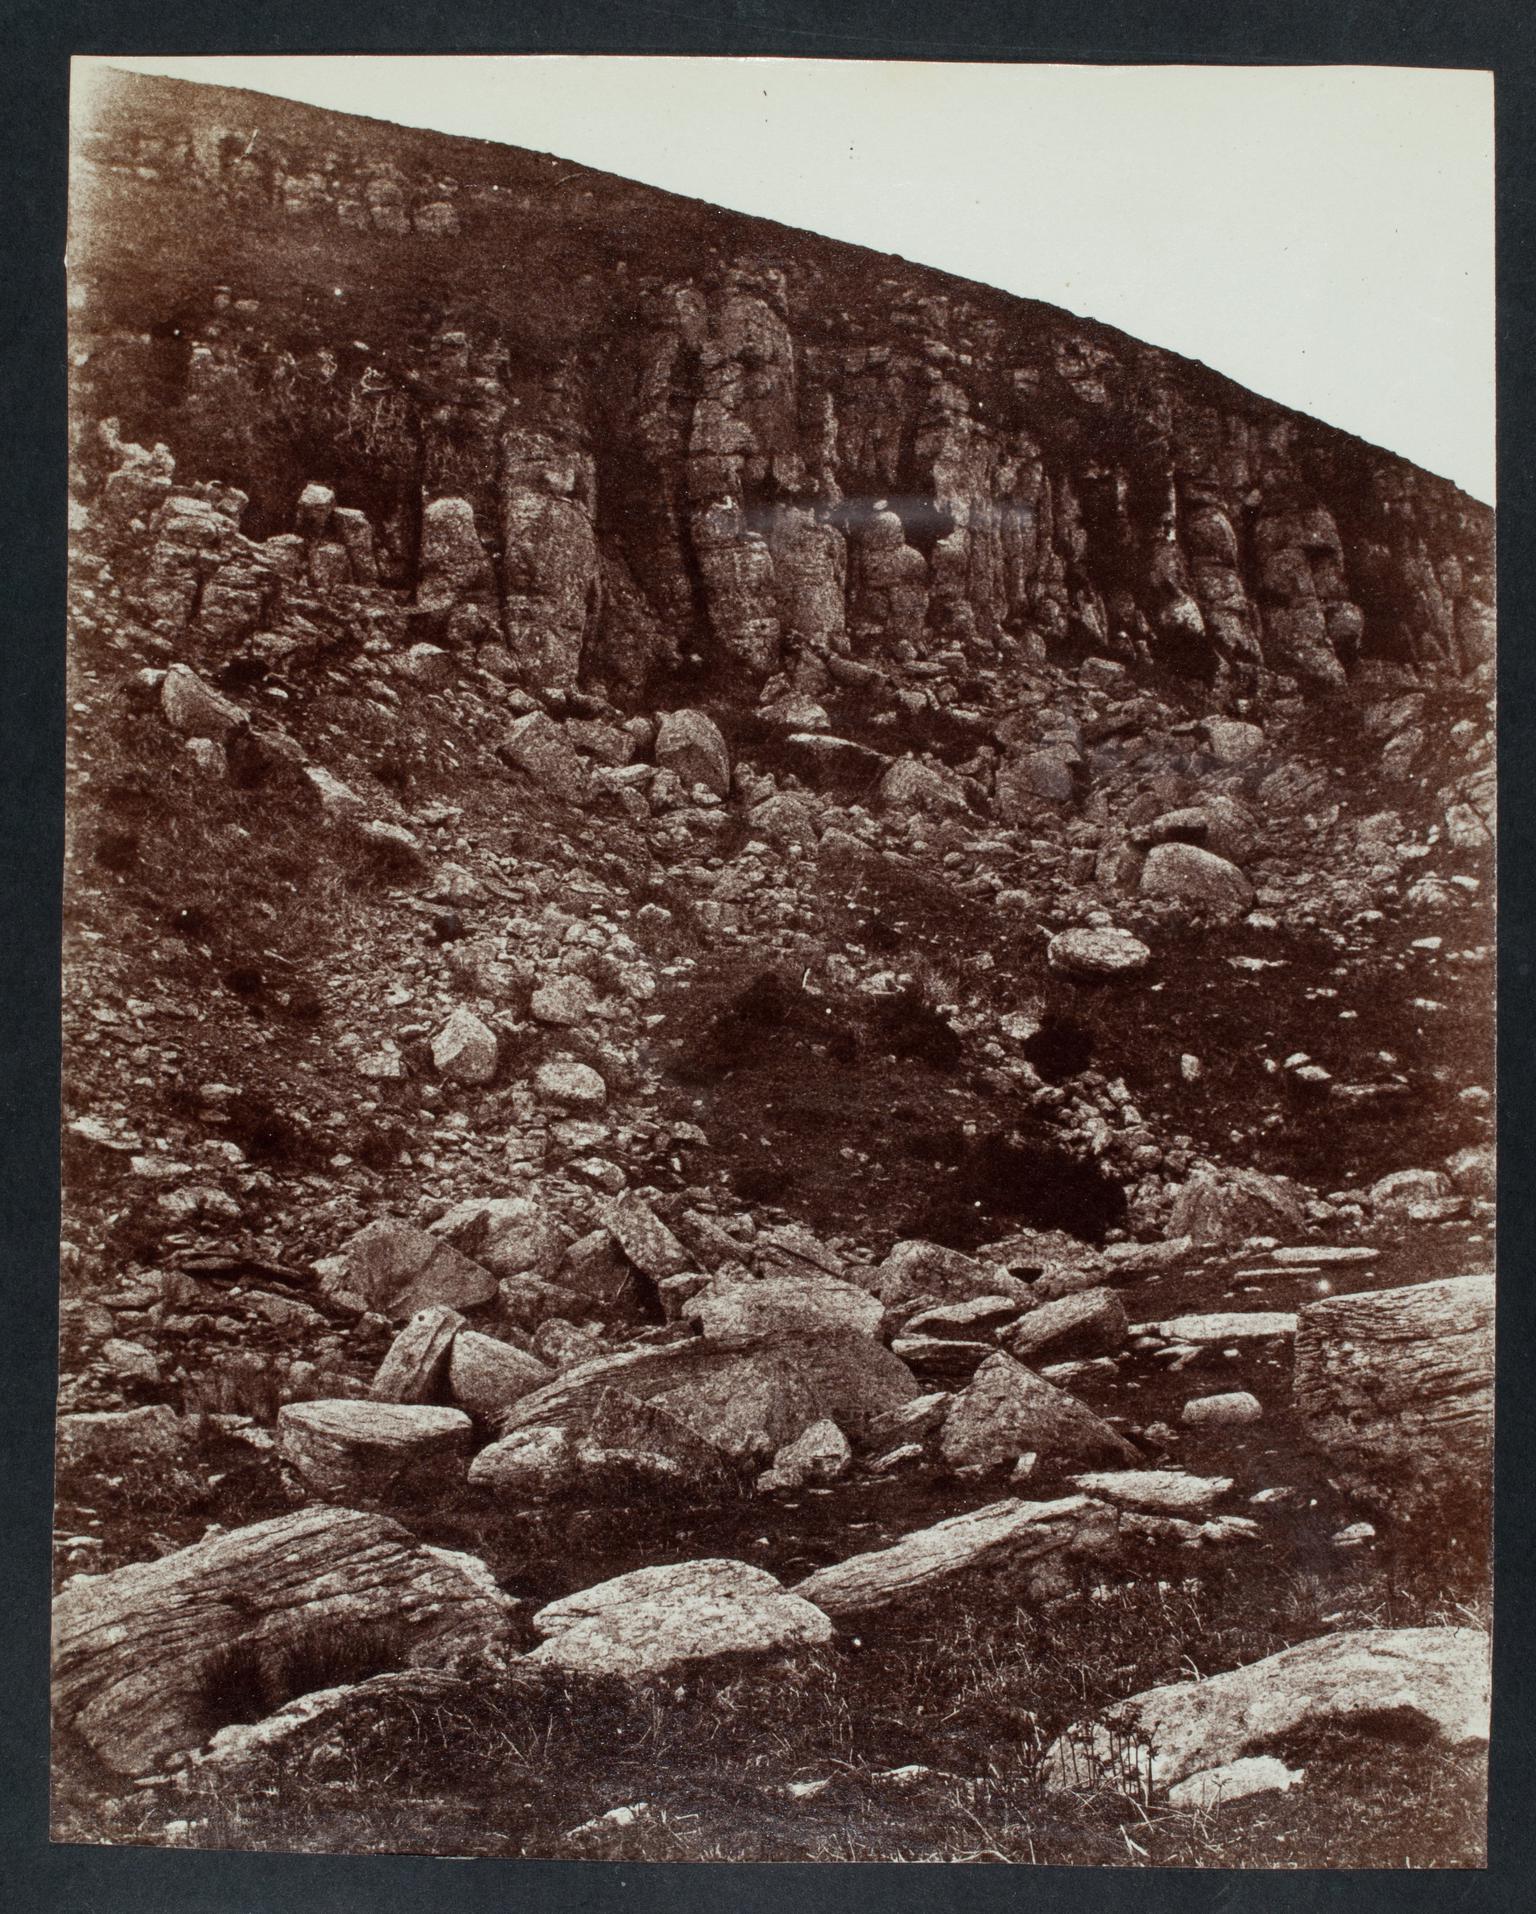 Rocky hillside, photograph